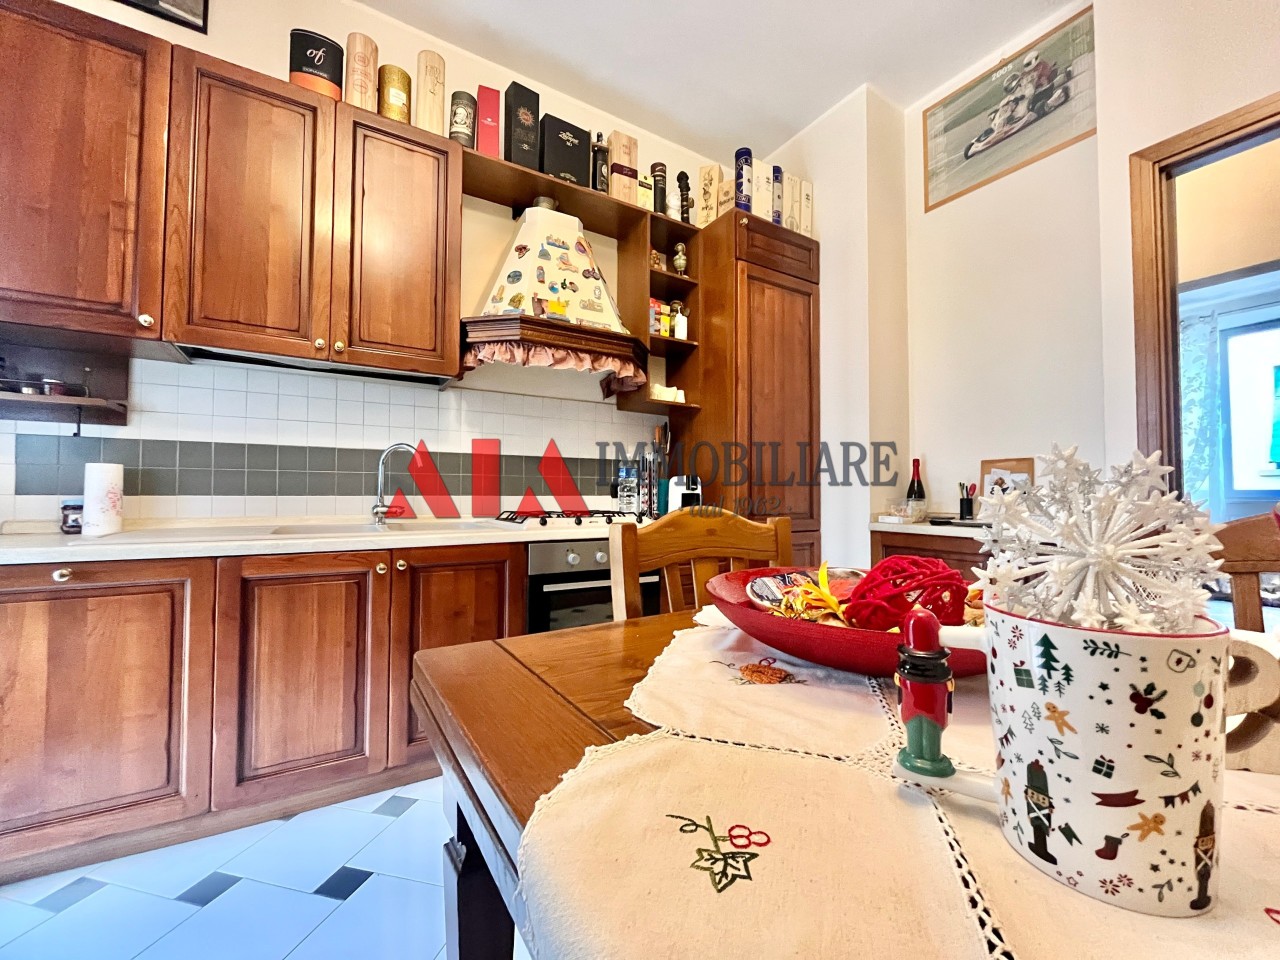 Appartamento in vendita a Pontedera, 4 locali, prezzo € 160.000 | PortaleAgenzieImmobiliari.it